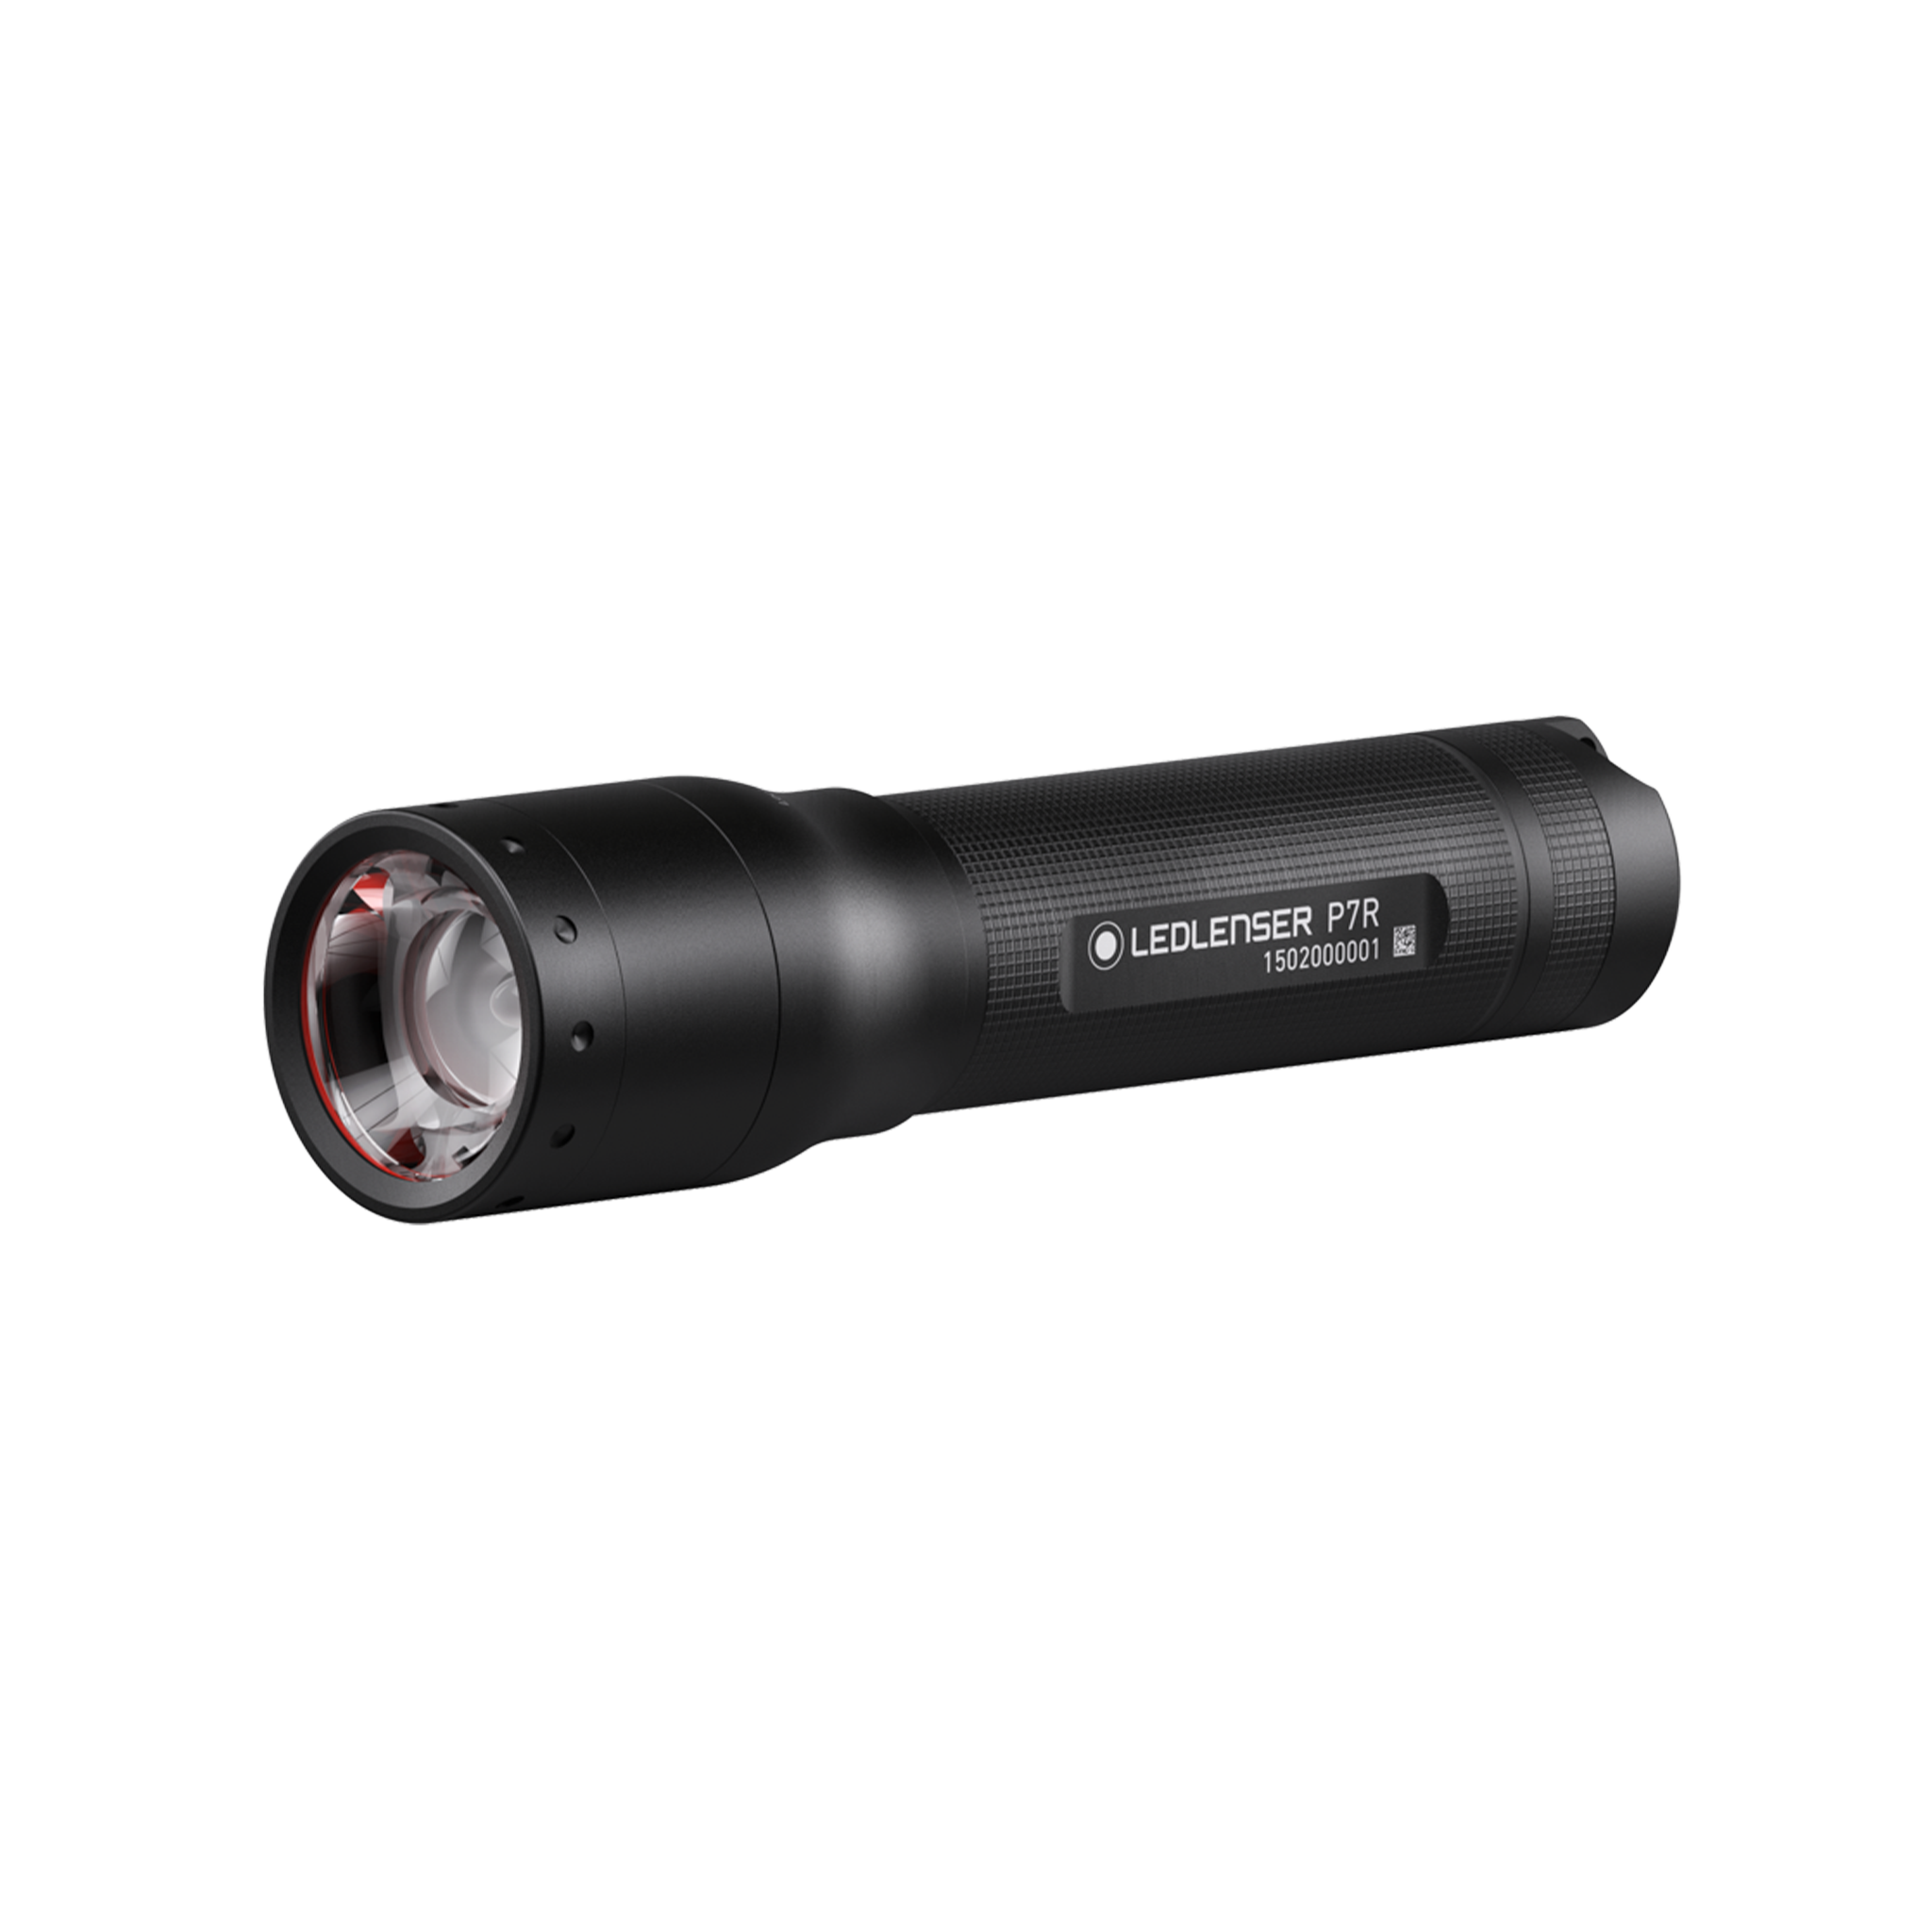 Ledlenser P7R P7R Rechargeable Flashlight | Ledlenser USA